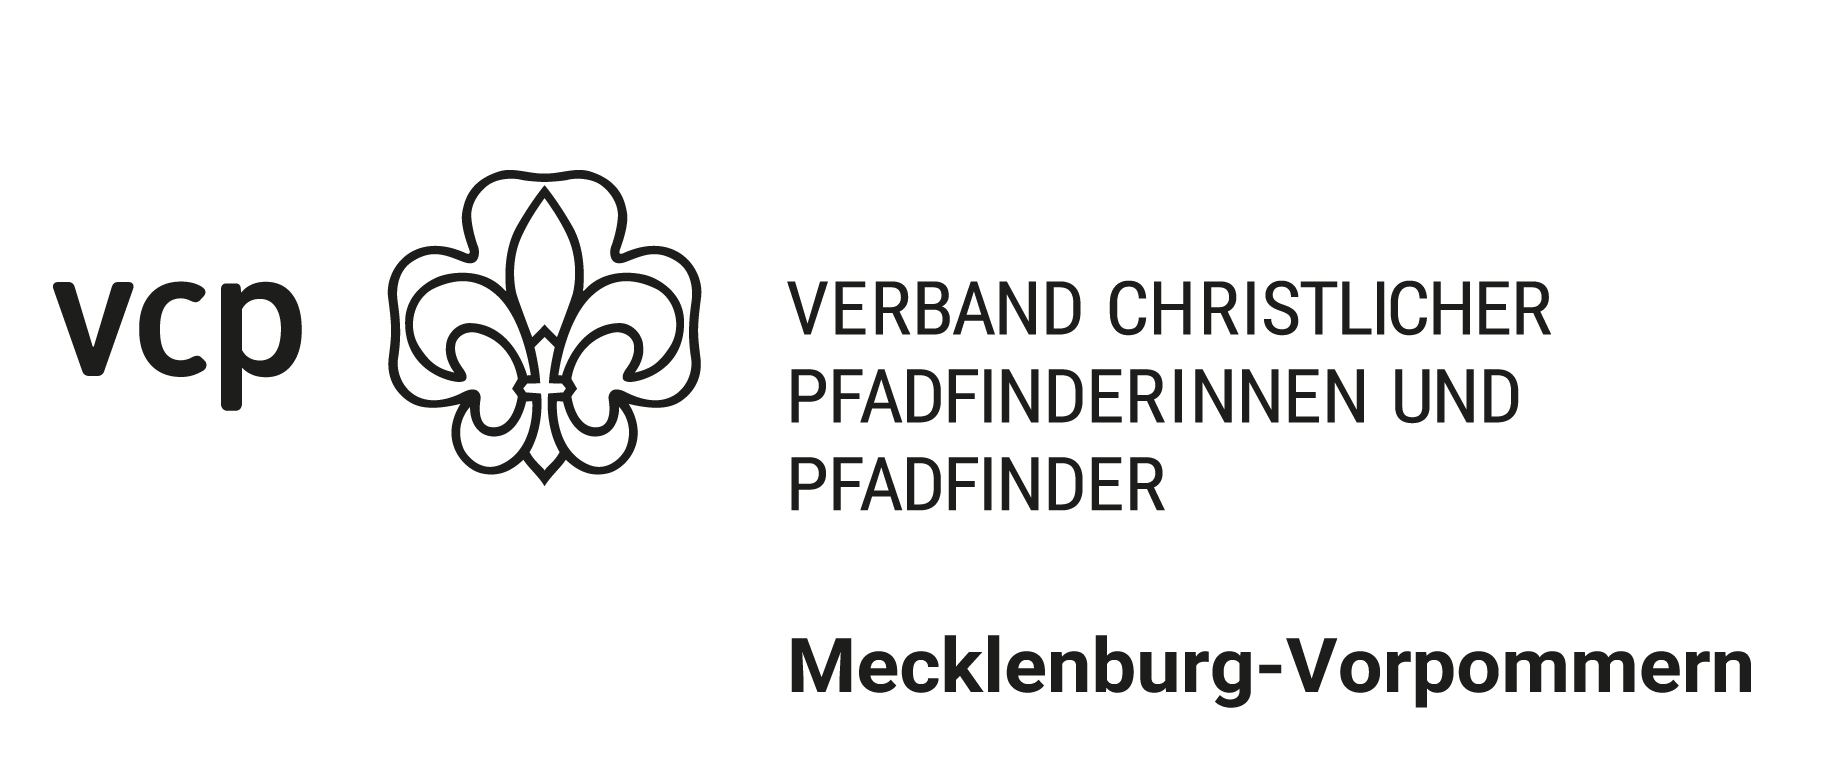 Verband Christlicher Pfadfinderinnen und Pfadfinder Mecklenburg-Vorpommern e.V.